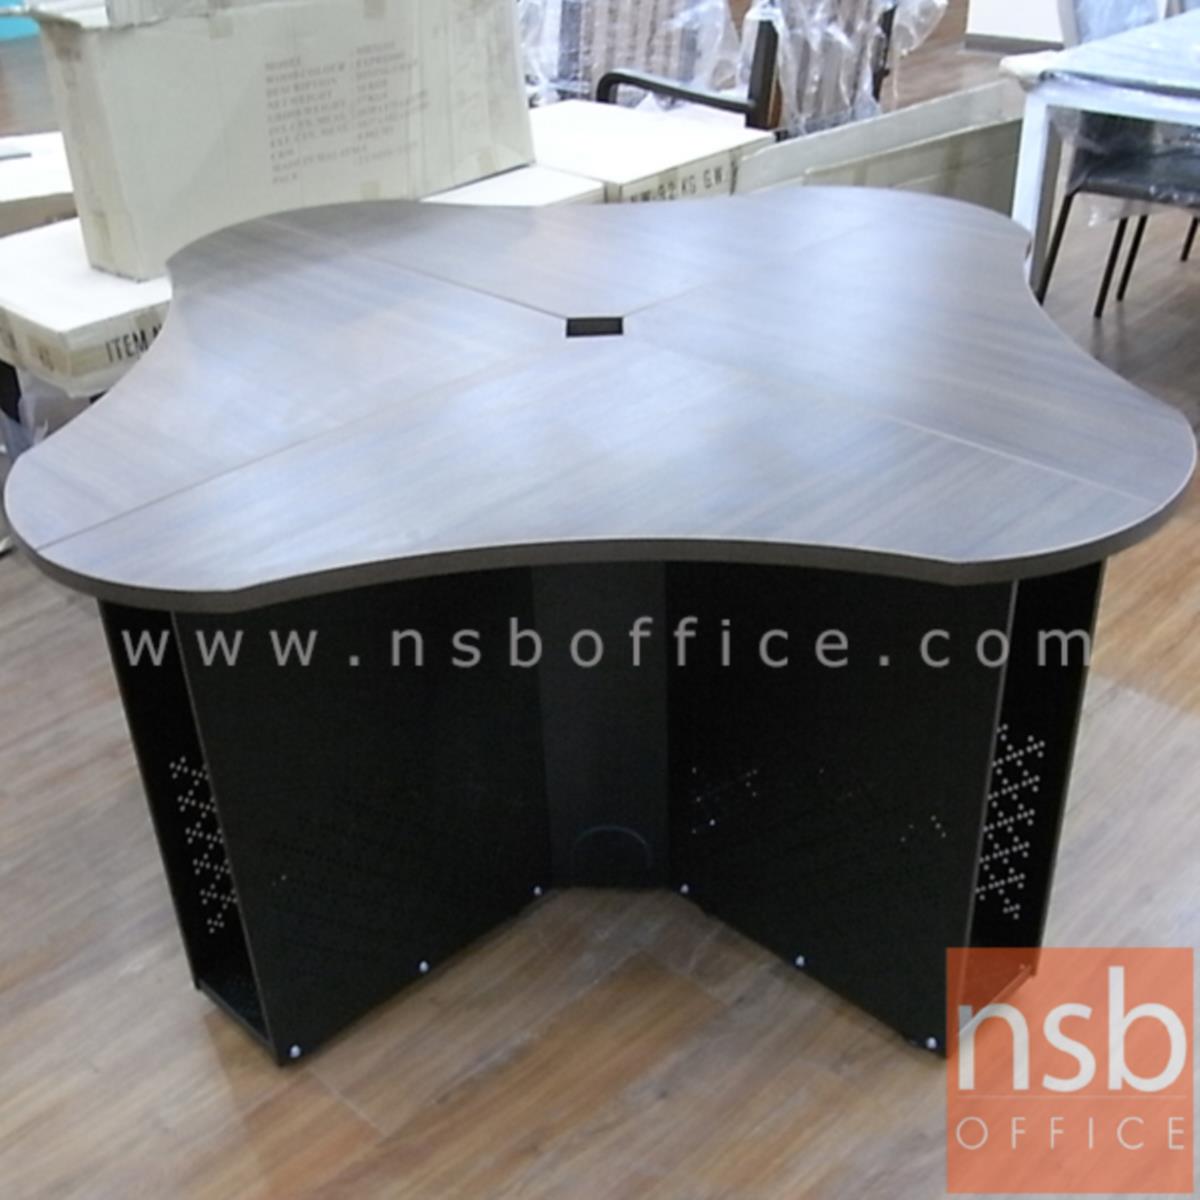 ชุดโต๊ะทำงานกลุ่ม 4 ที่นั่ง   ขนาด 150W, 180W cm. พร้อมมินิสกรีนกระจก